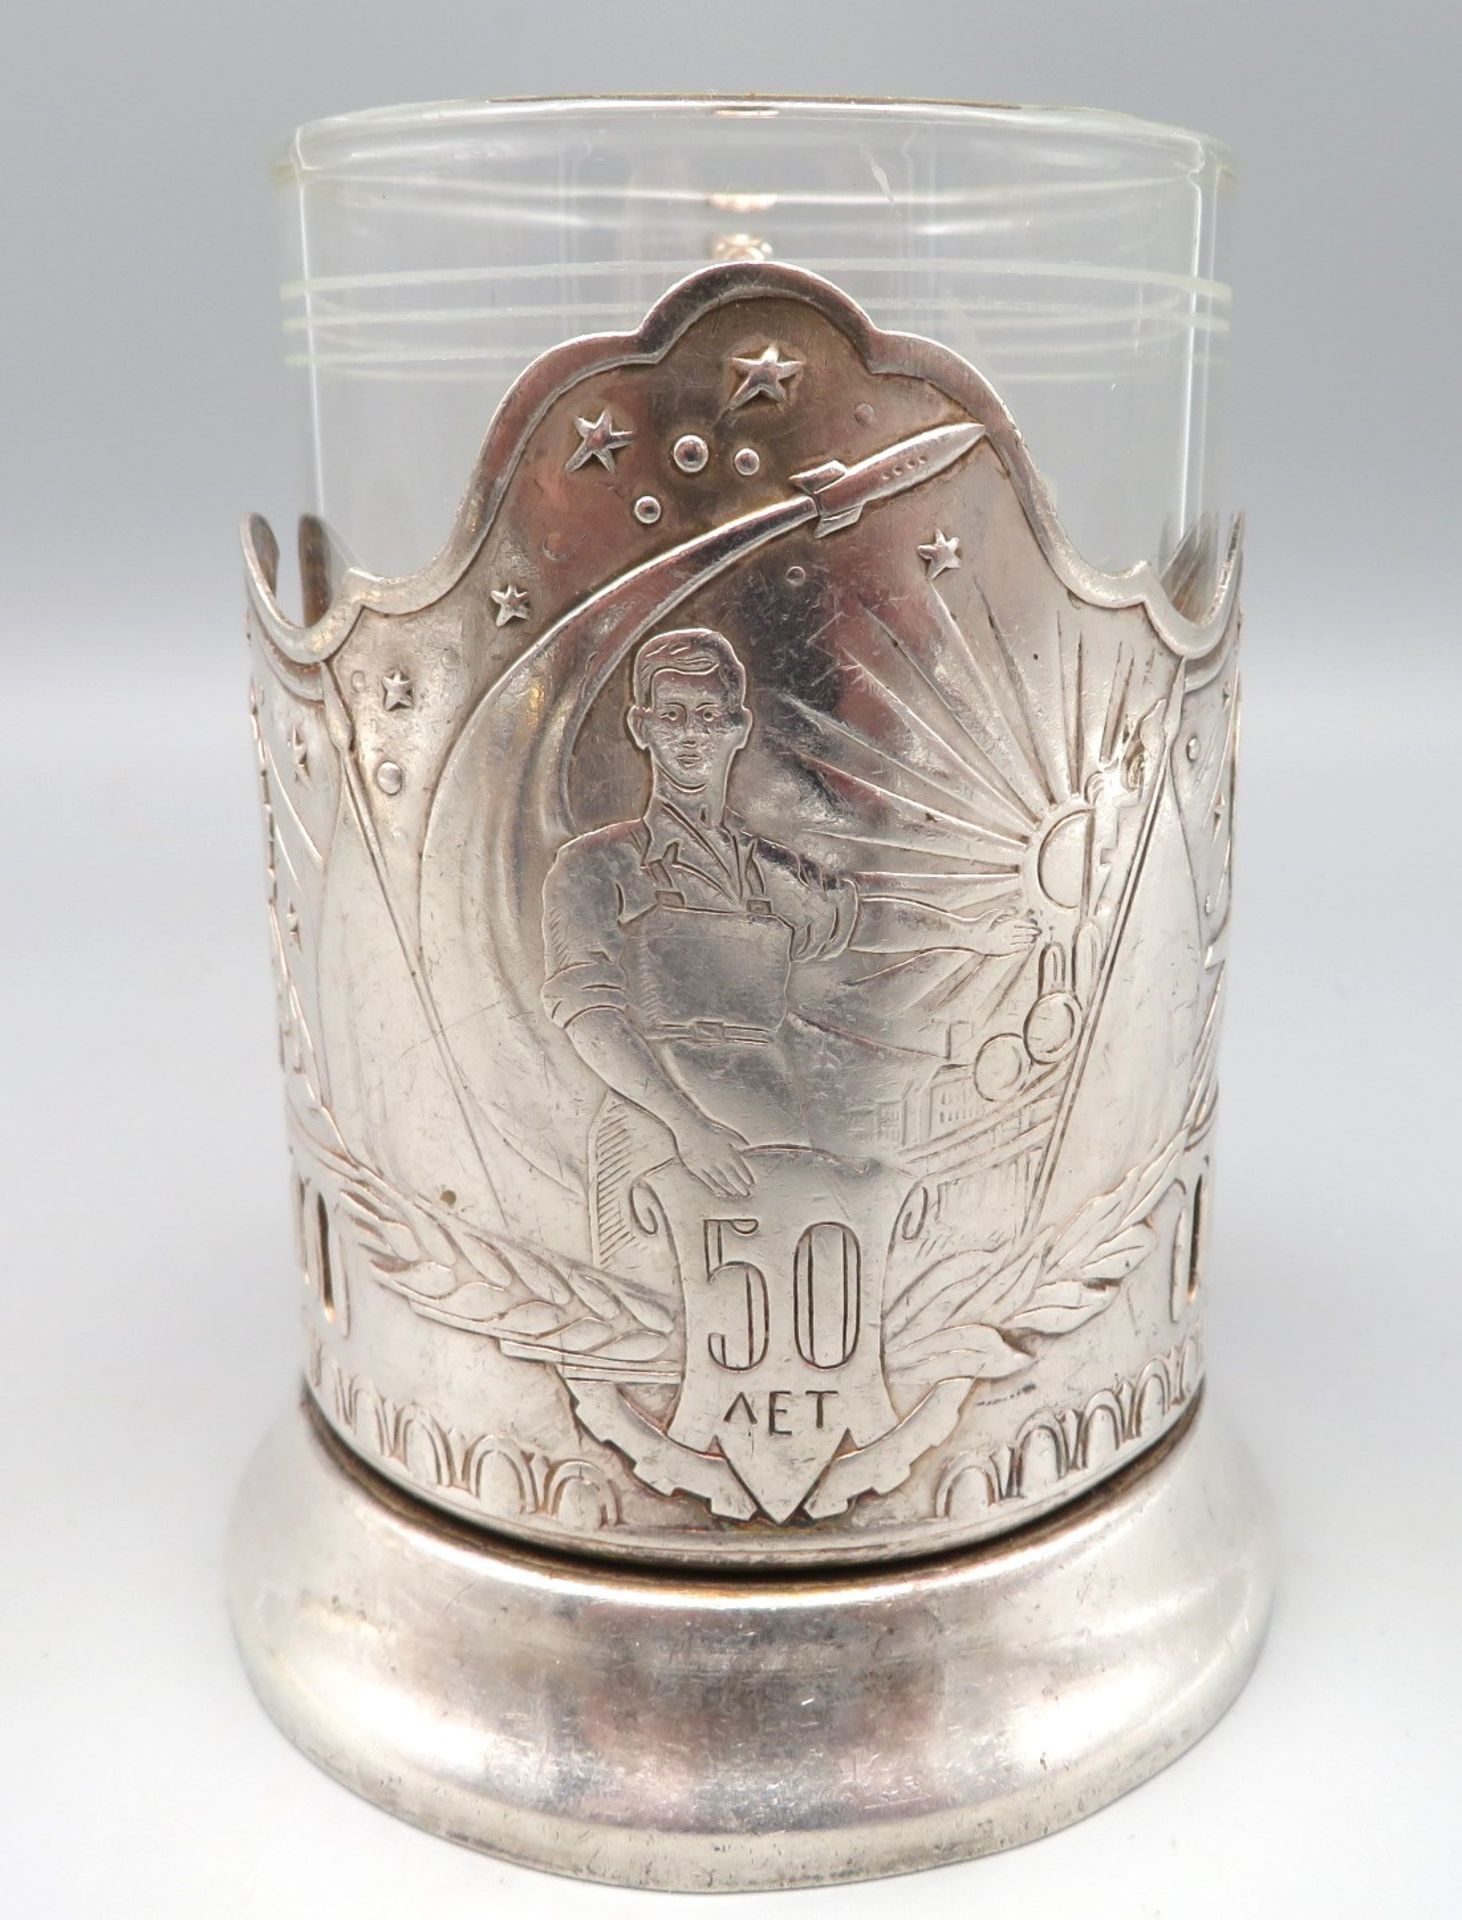 Teeglashalter, Russland, versilberte Montur mit Reliefdekor von Sputnik, gem., h 11 cm, d 11 cm. - Bild 2 aus 4